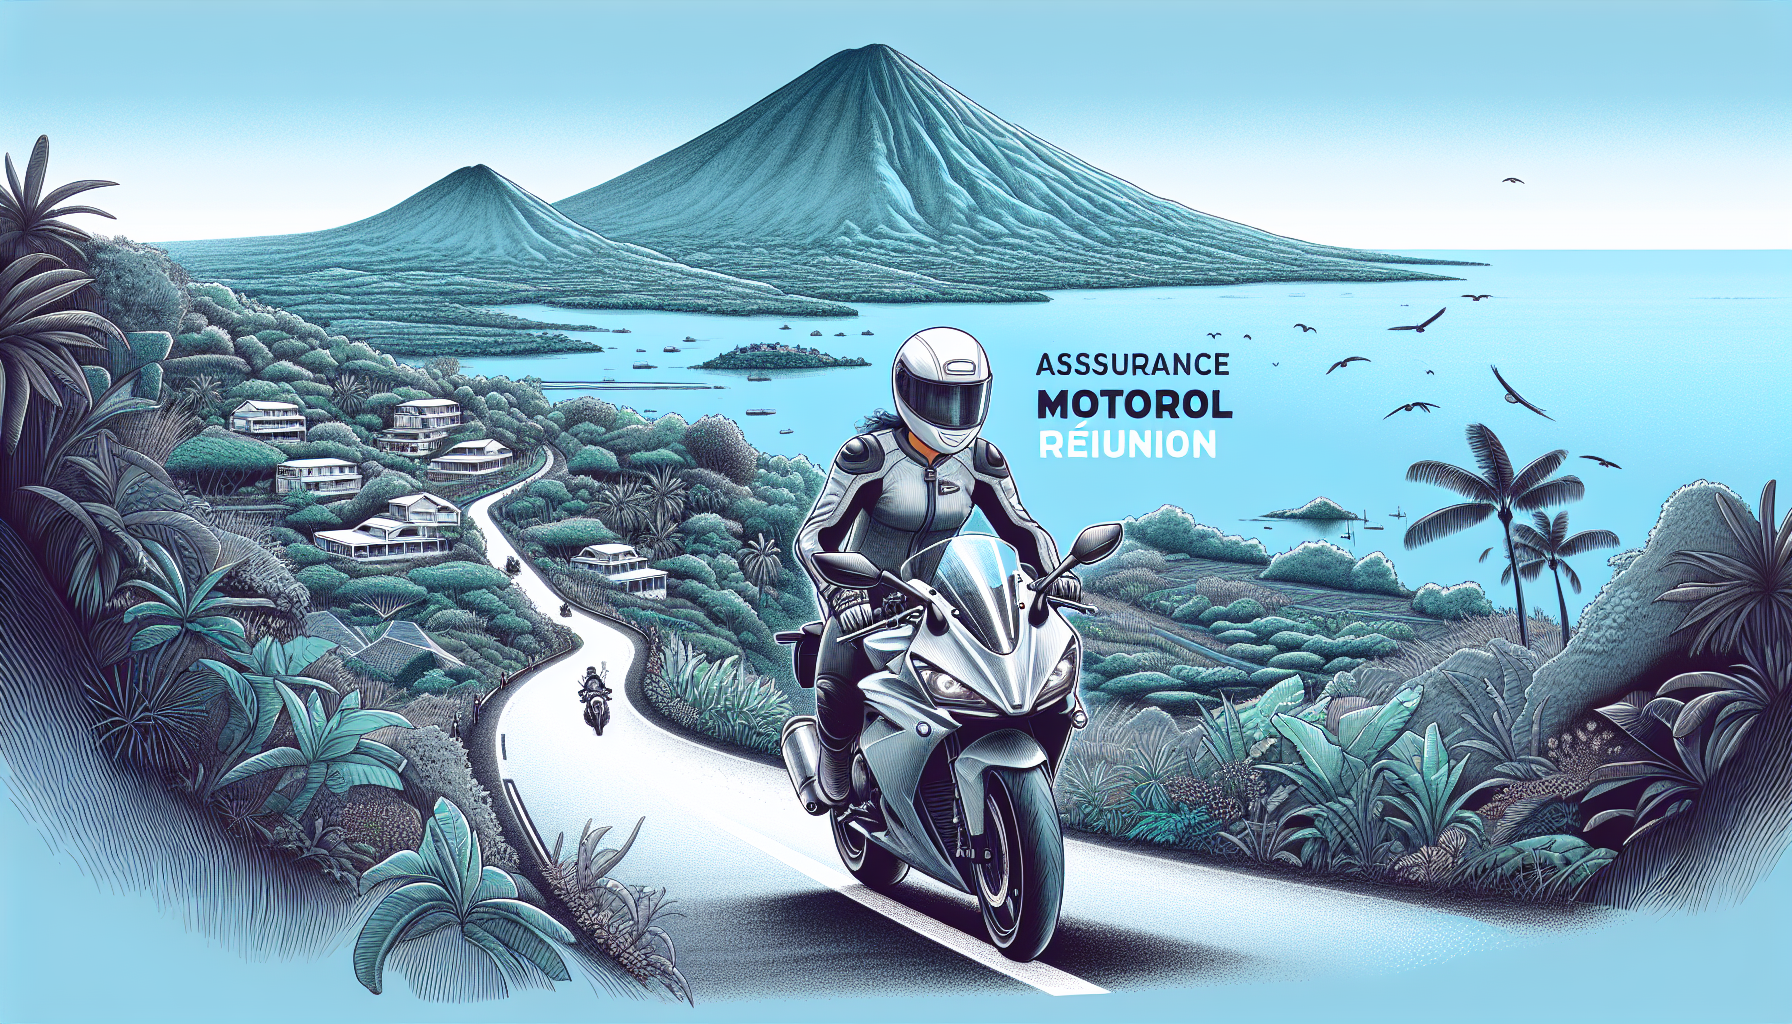 découvrez l'assurance tous risques pour votre moto à la réunion. souscrivez une assurance moto adaptée à vos besoins avec des garanties complètes.